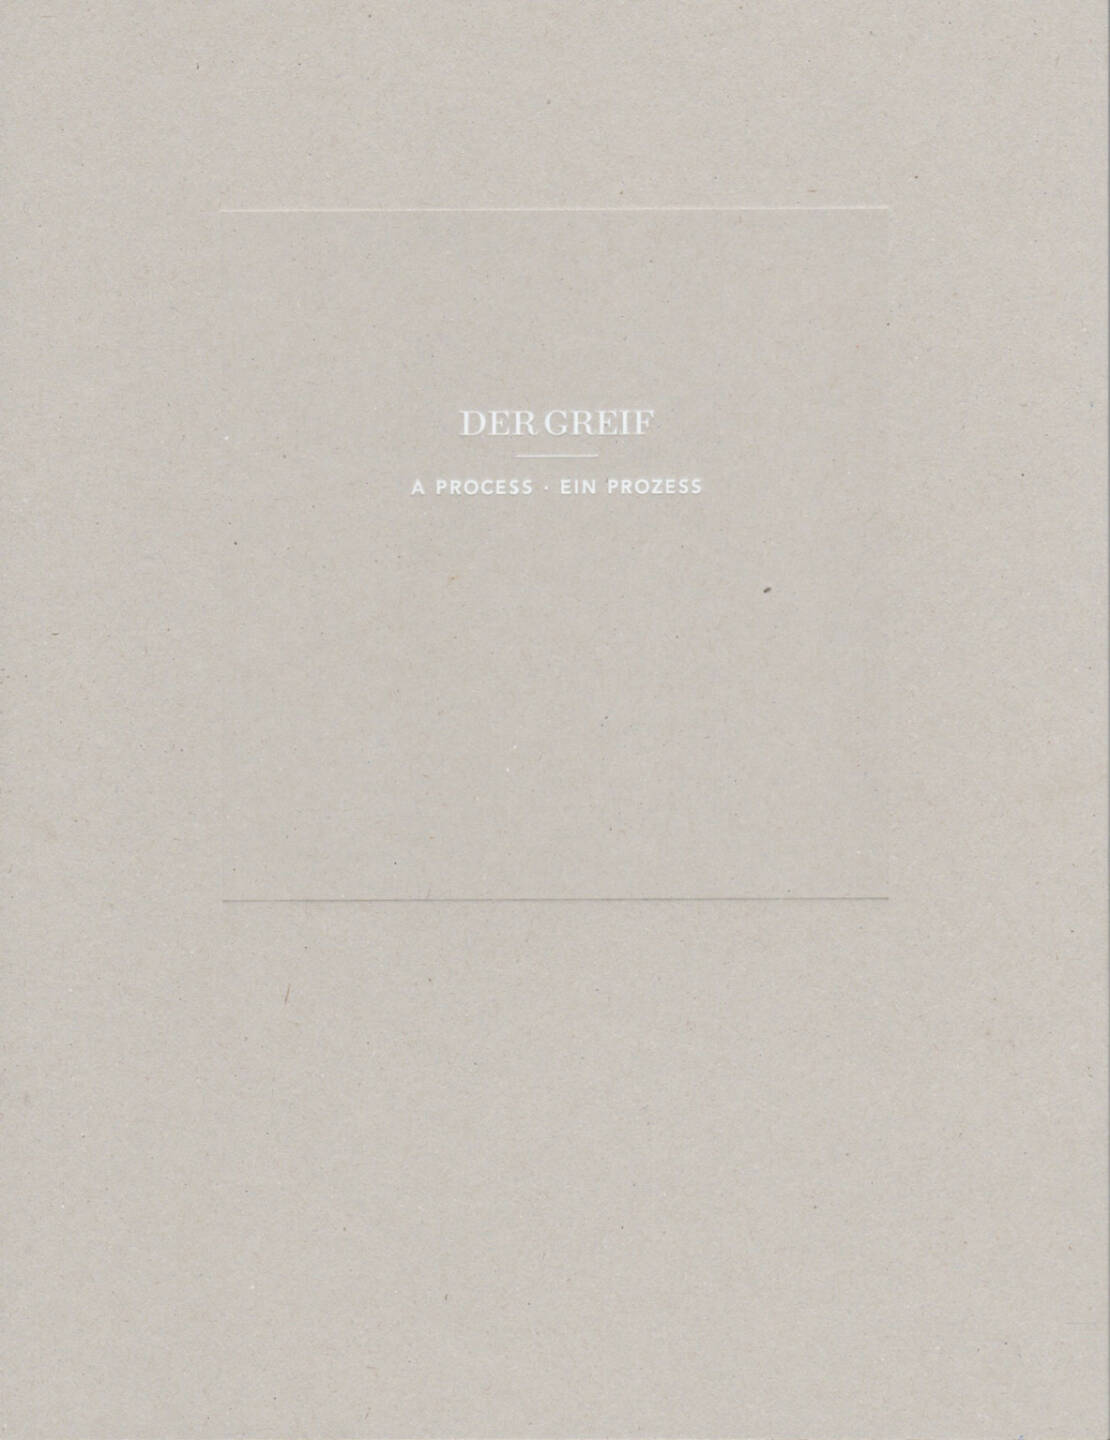 Der Greif - A Process - Ein Prozess, Der Greif, 2014, Cover - http://josefchladek.com/book/der_greif_-_a_process